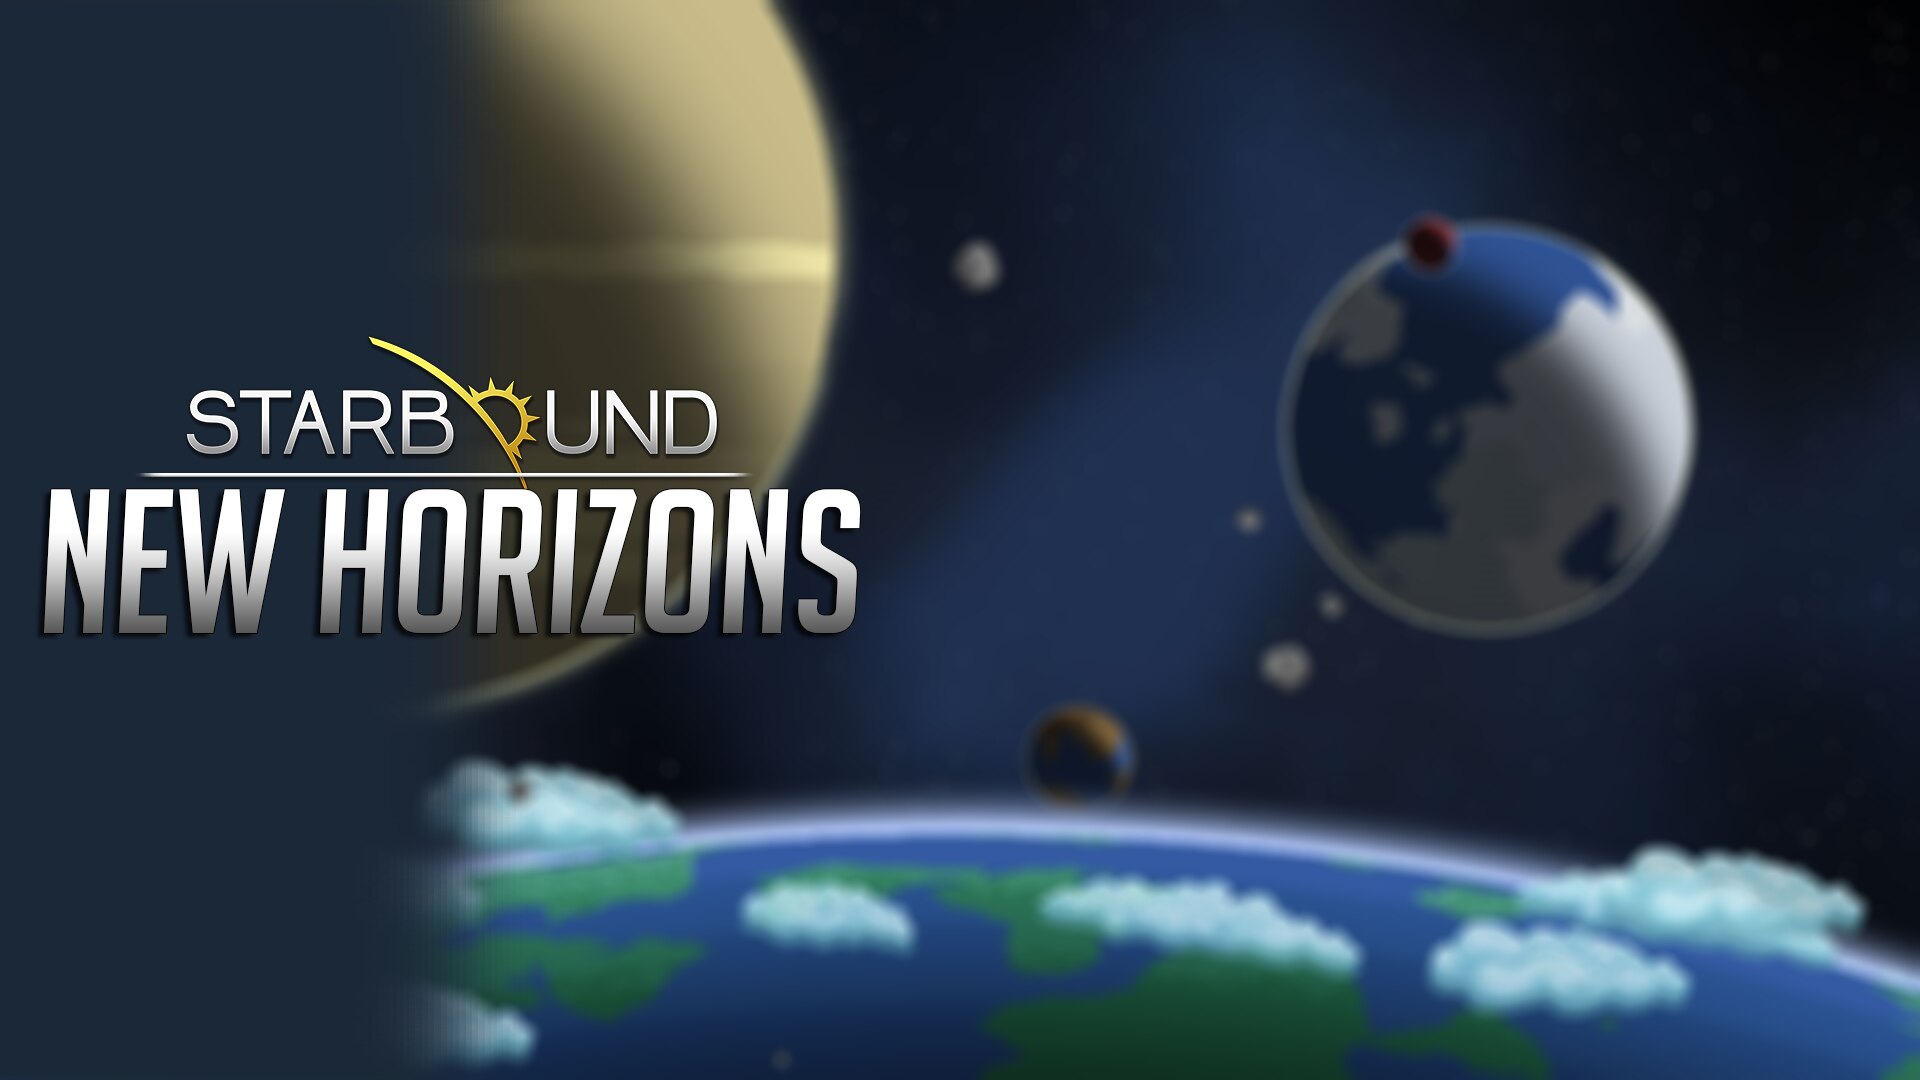 Steam Workshop::ST: New Horizons